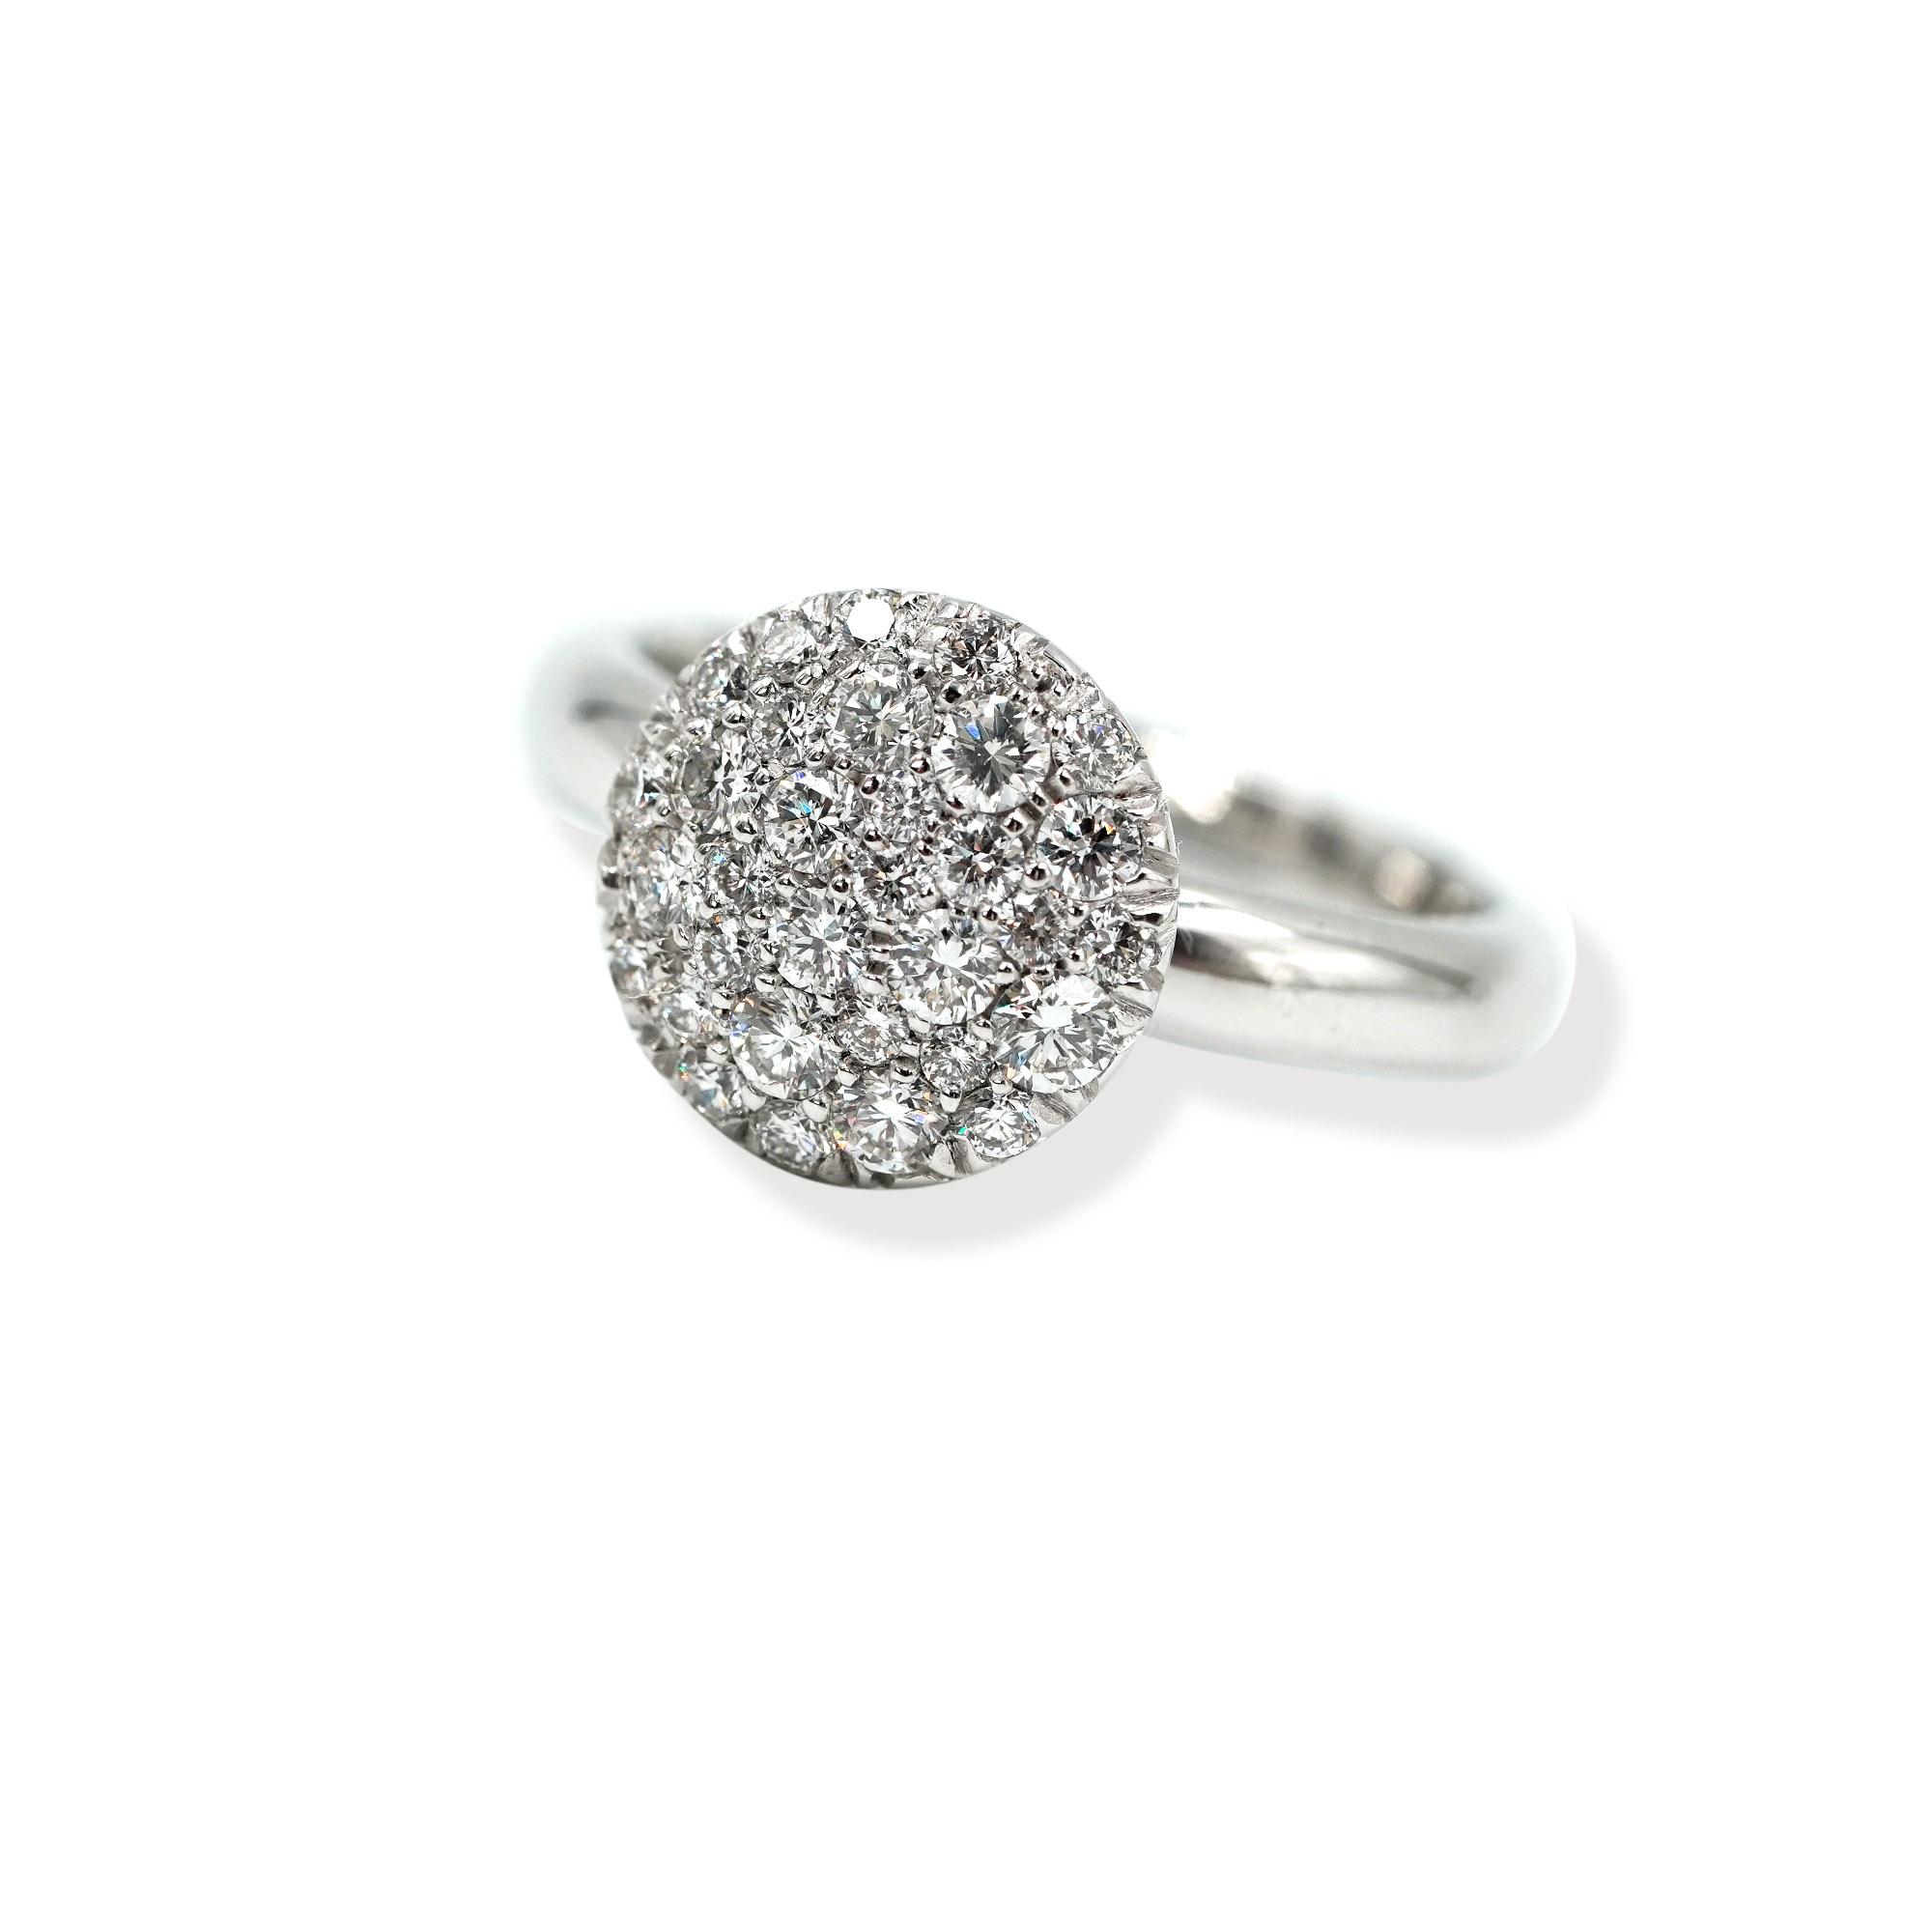 Oval Shaped Pave' Diamond Ring - XO Jewels